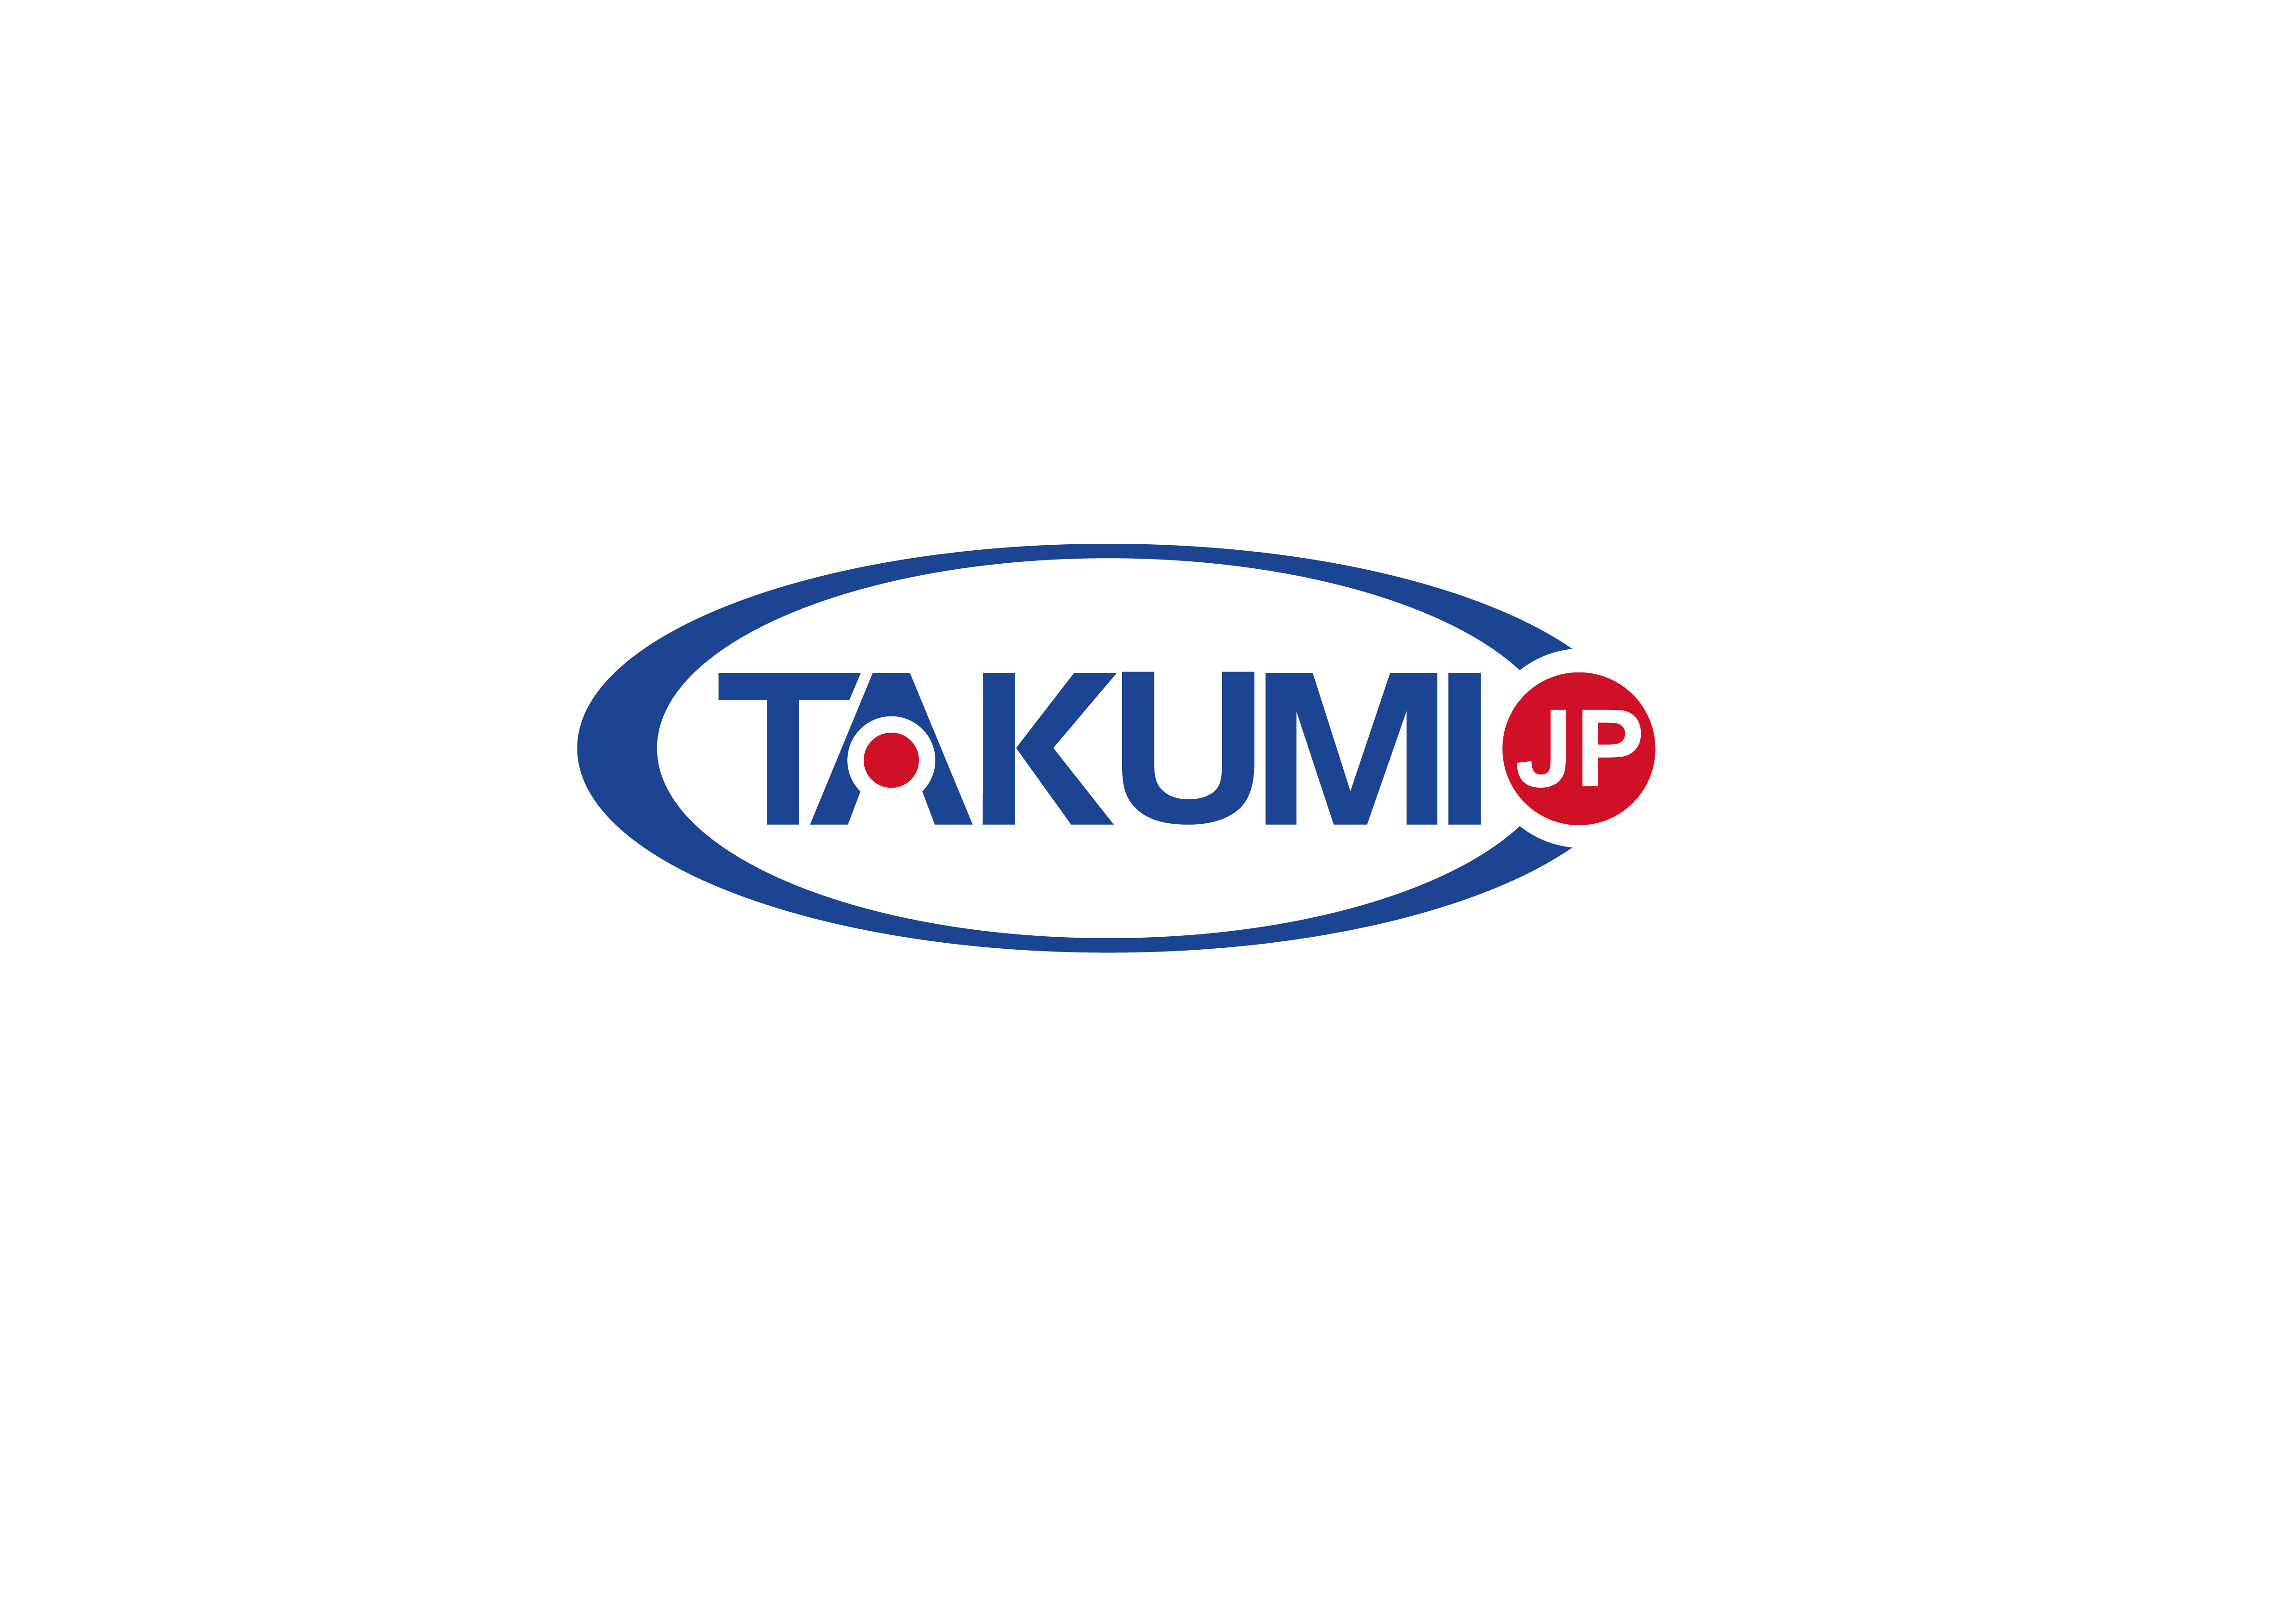 τελευταία εταιρεία περί Το Takumi ψάχνει τώρα έναν σφαιρικό αποκλειστικό διανομέα.